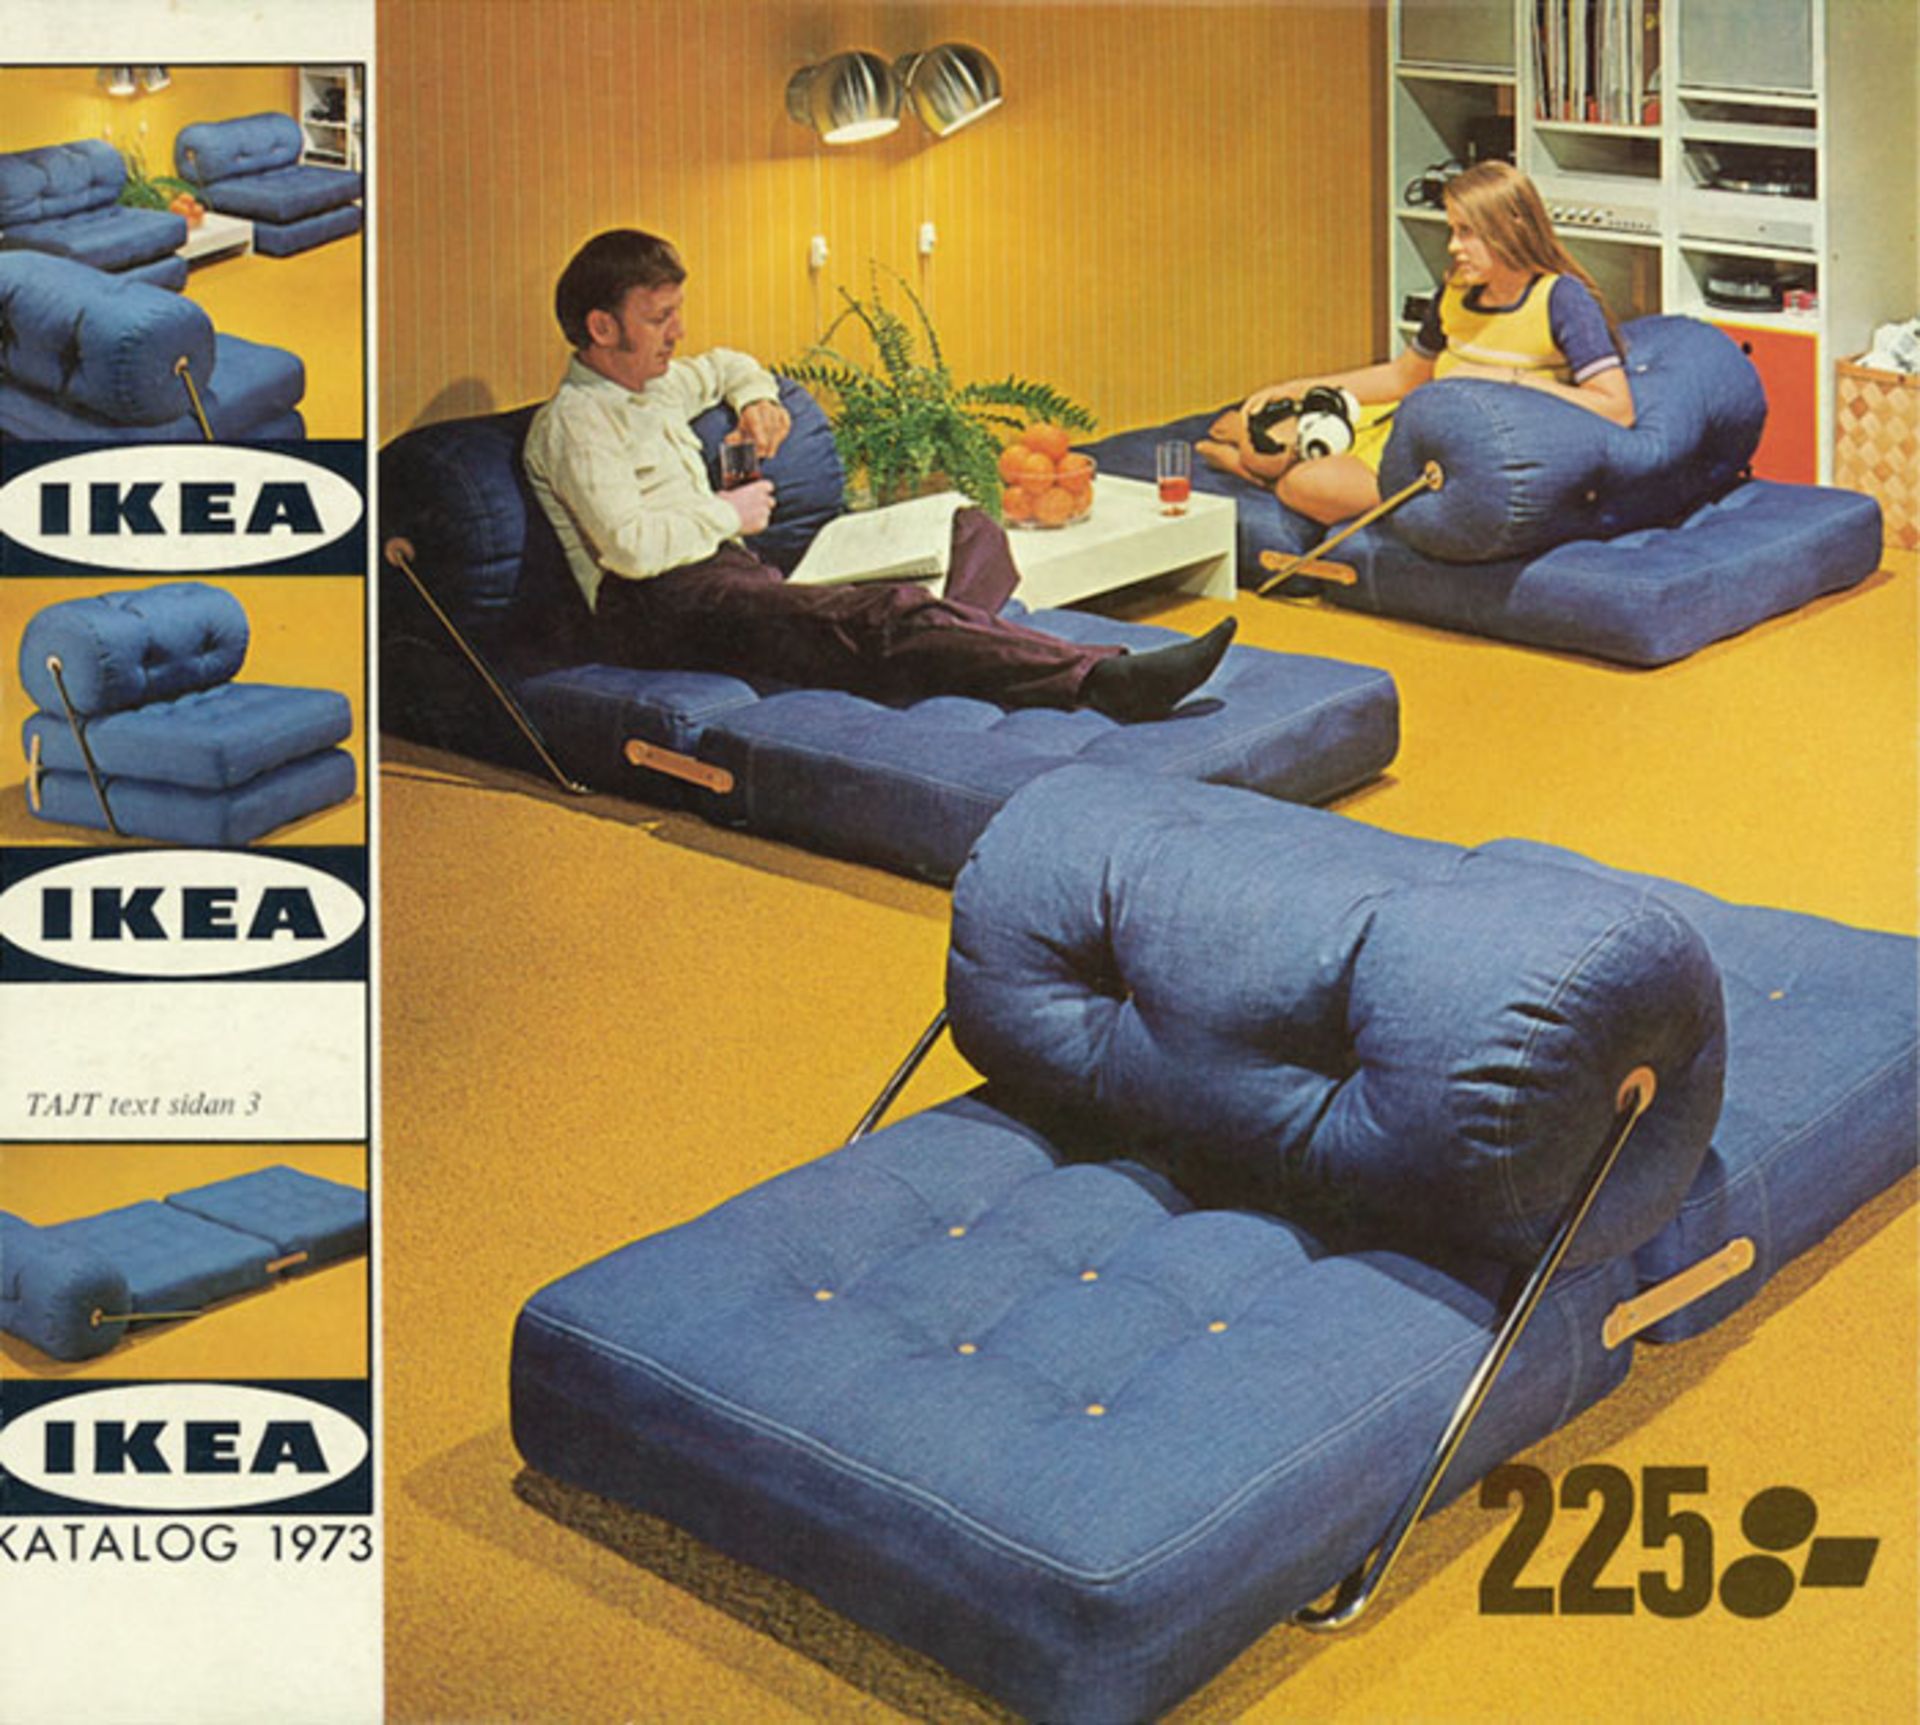 مرجع متخصصين ايران ايكيا / IKEA